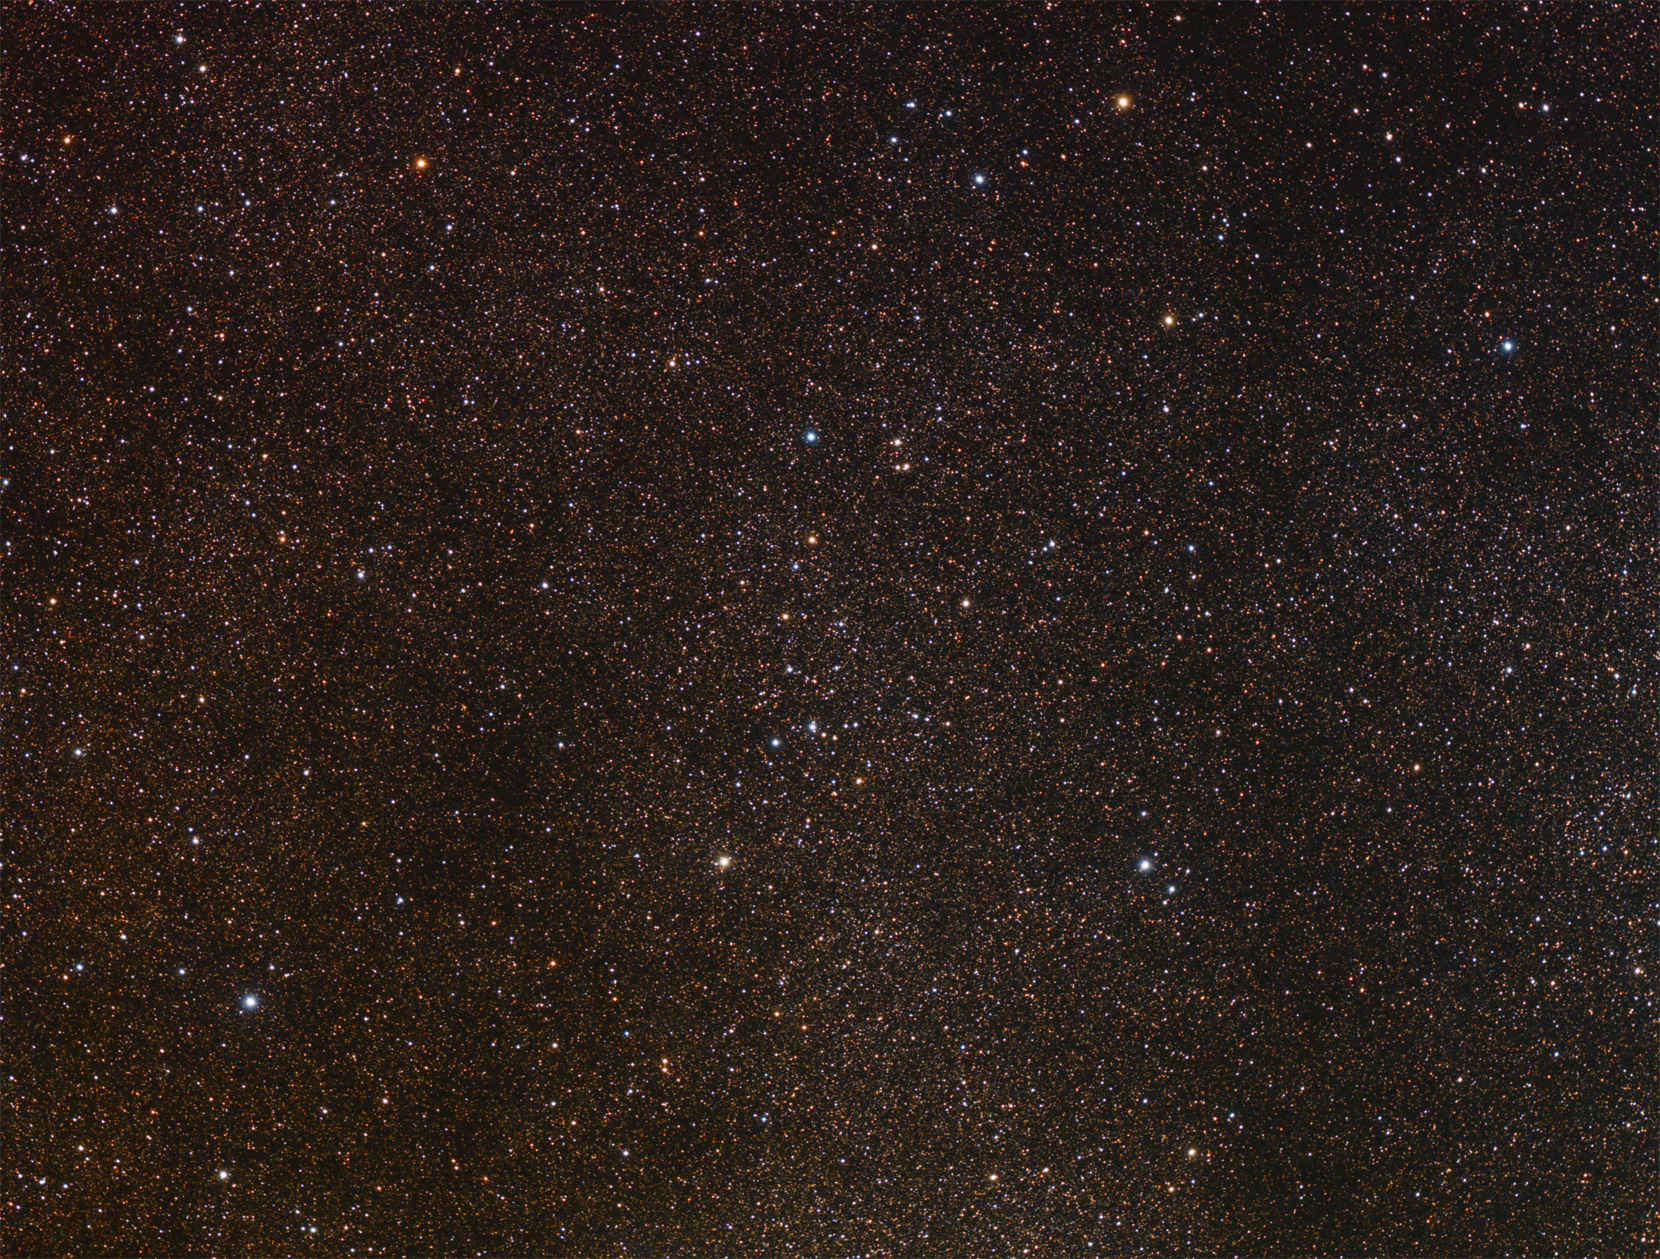 NGC 6738